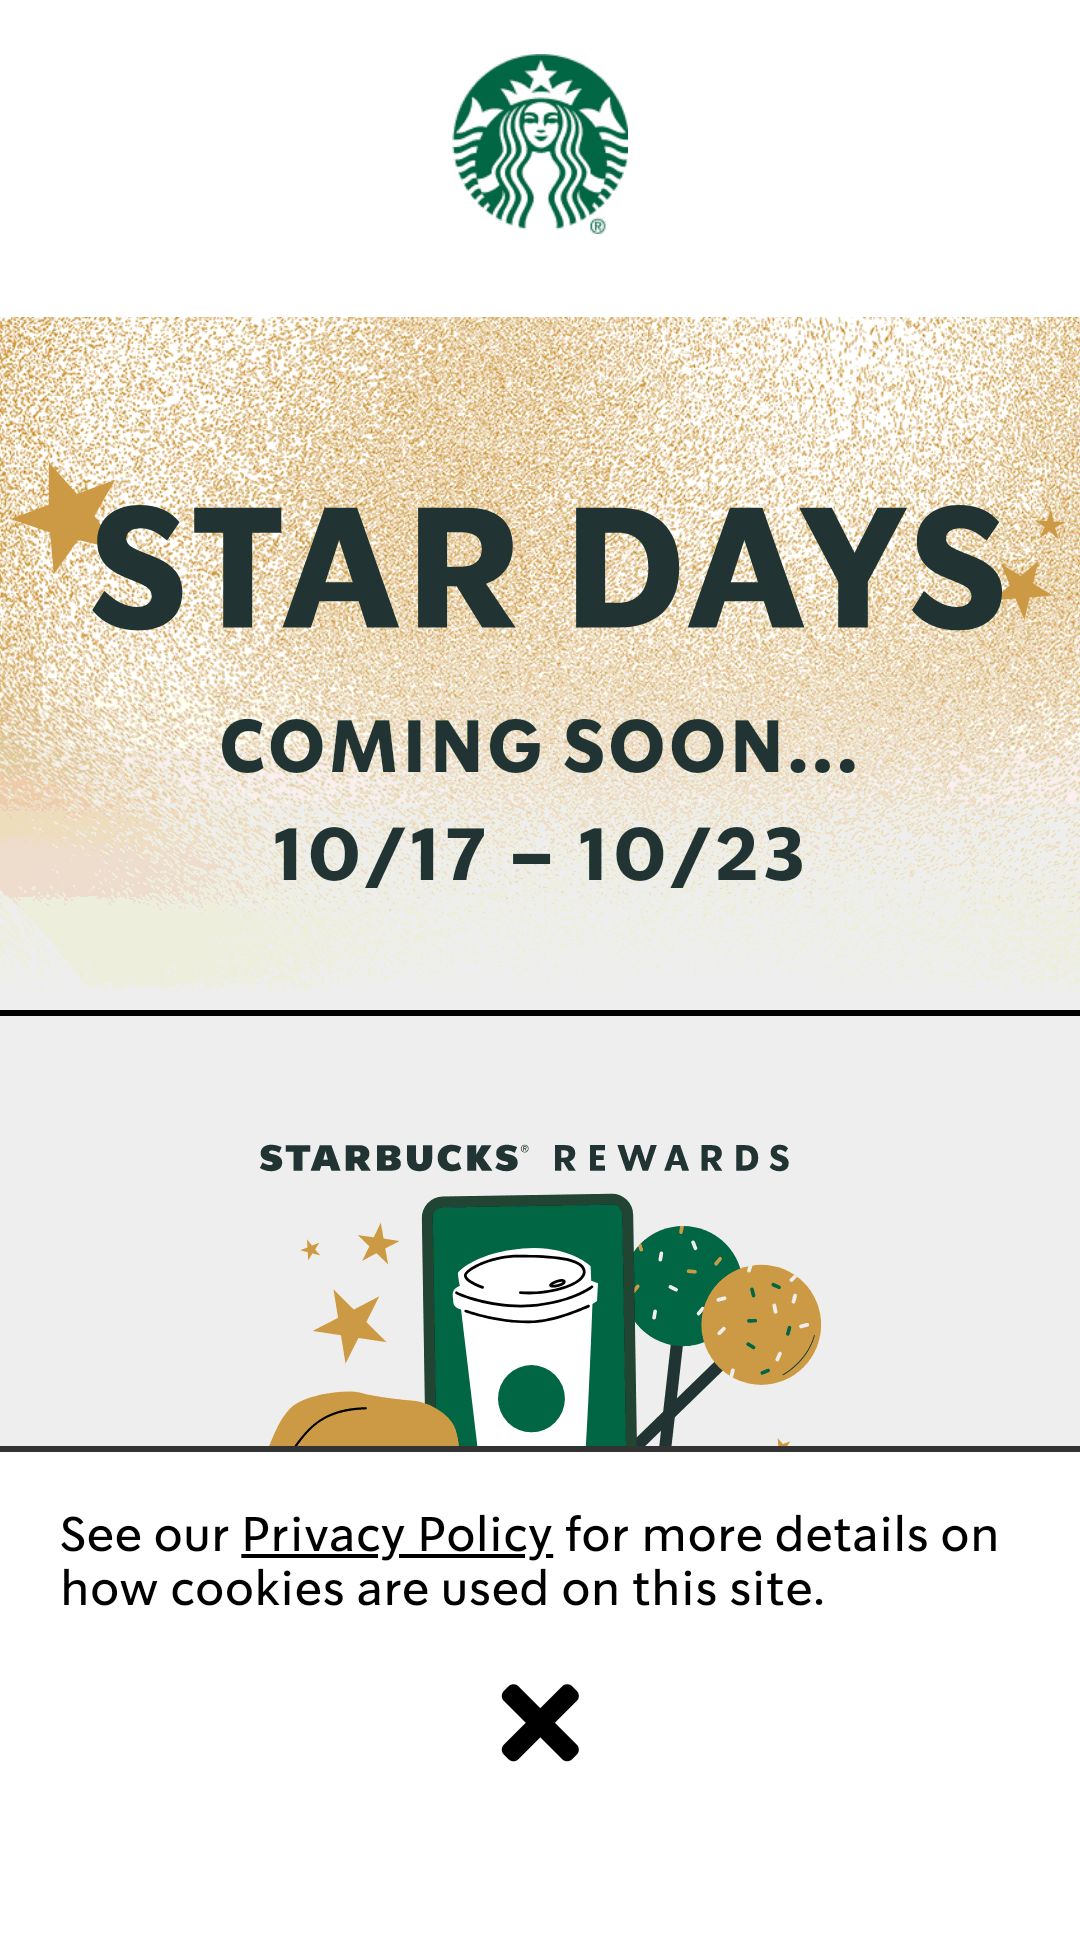 星巴克Starbucks星星周来啦！